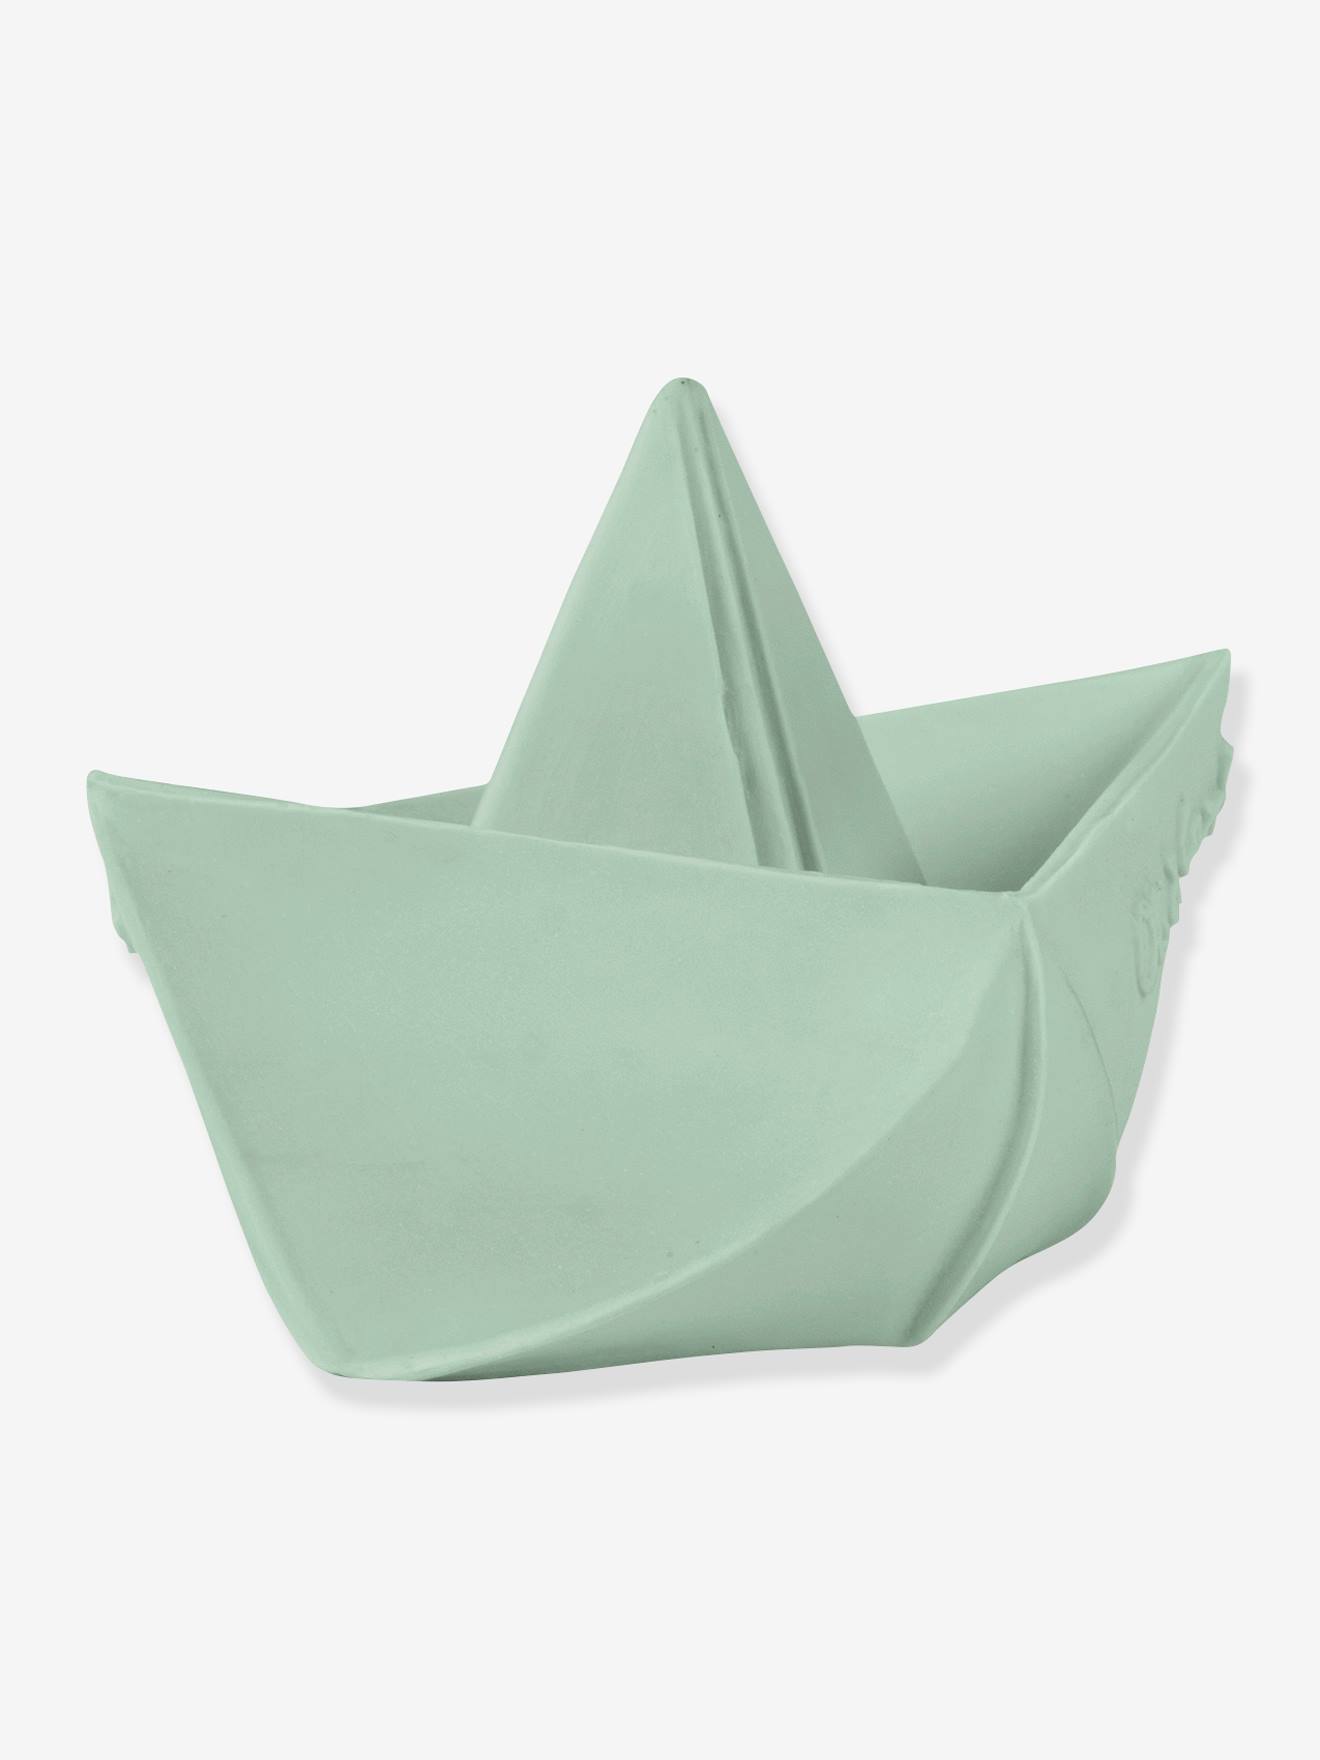 Origami Boat Bath Time Toy, by OLI & CAROL green light solid